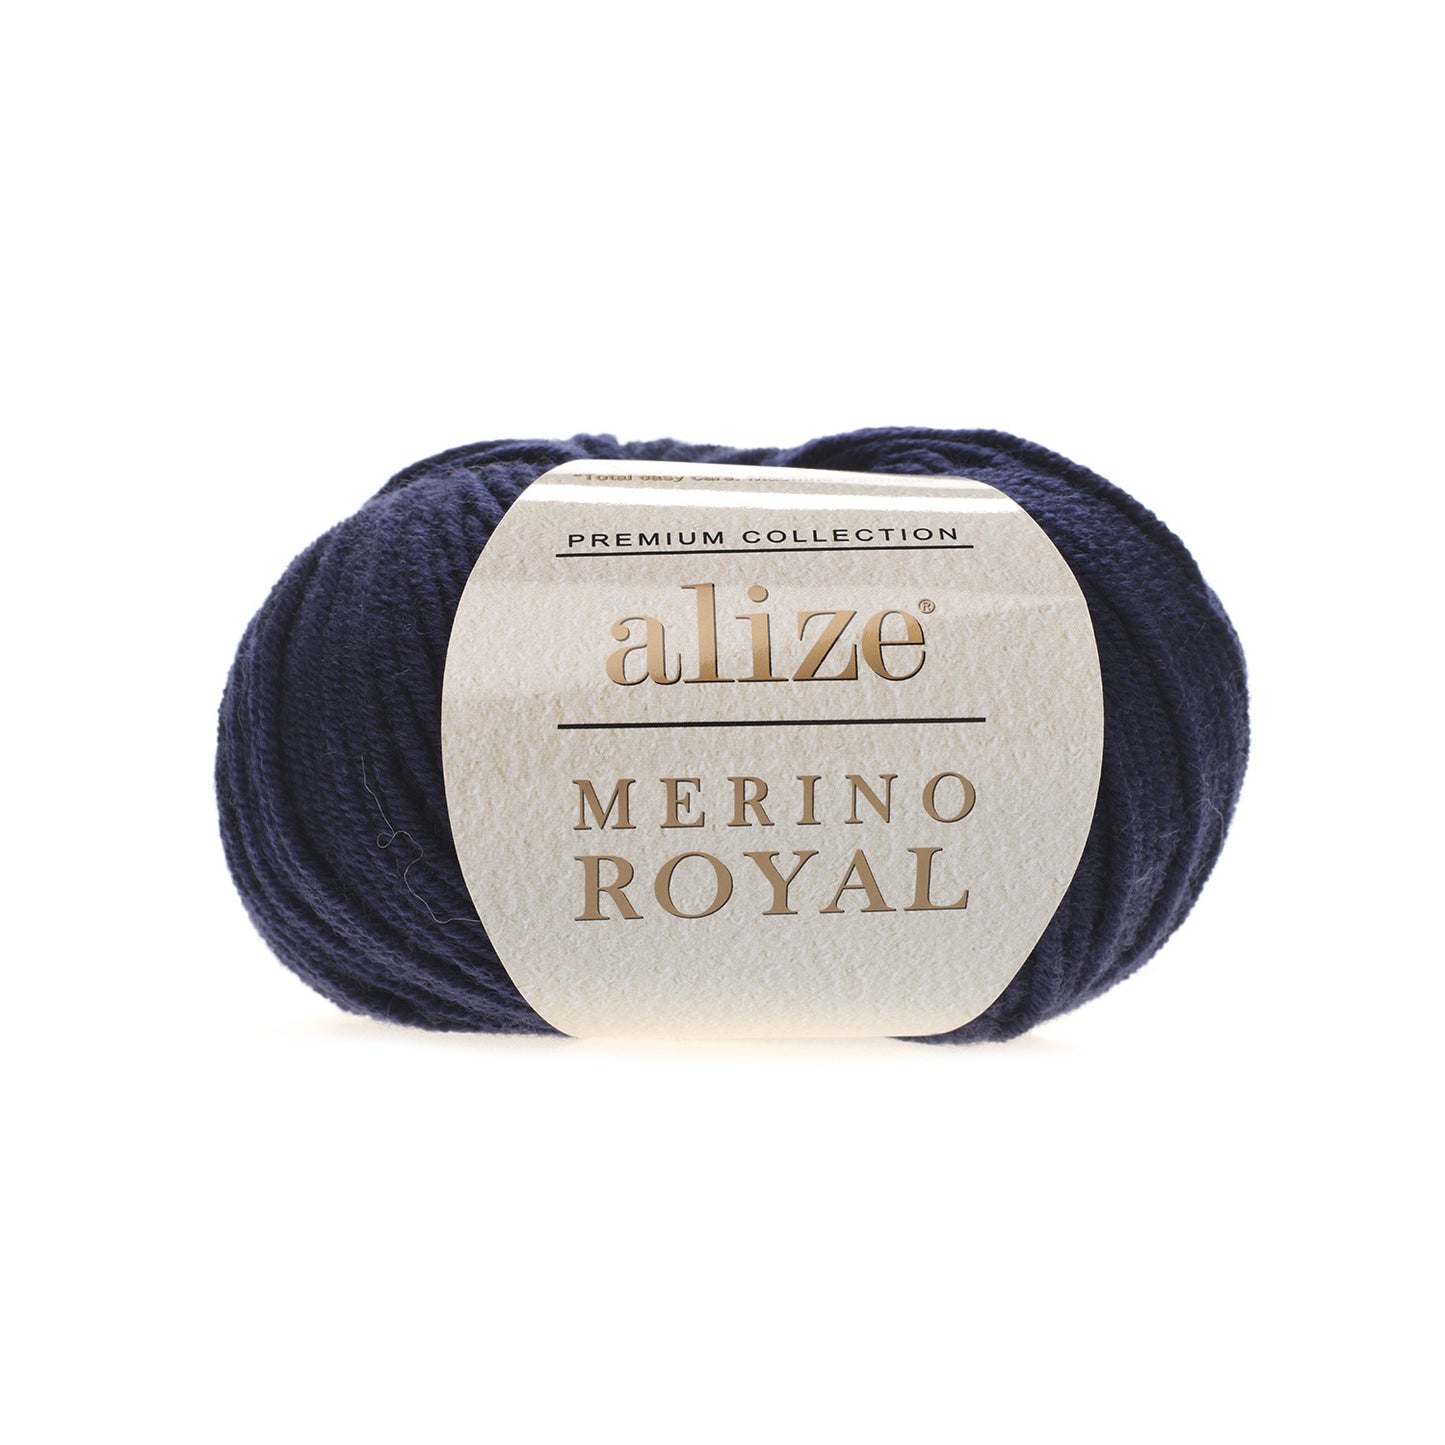 Merino Royal yarn